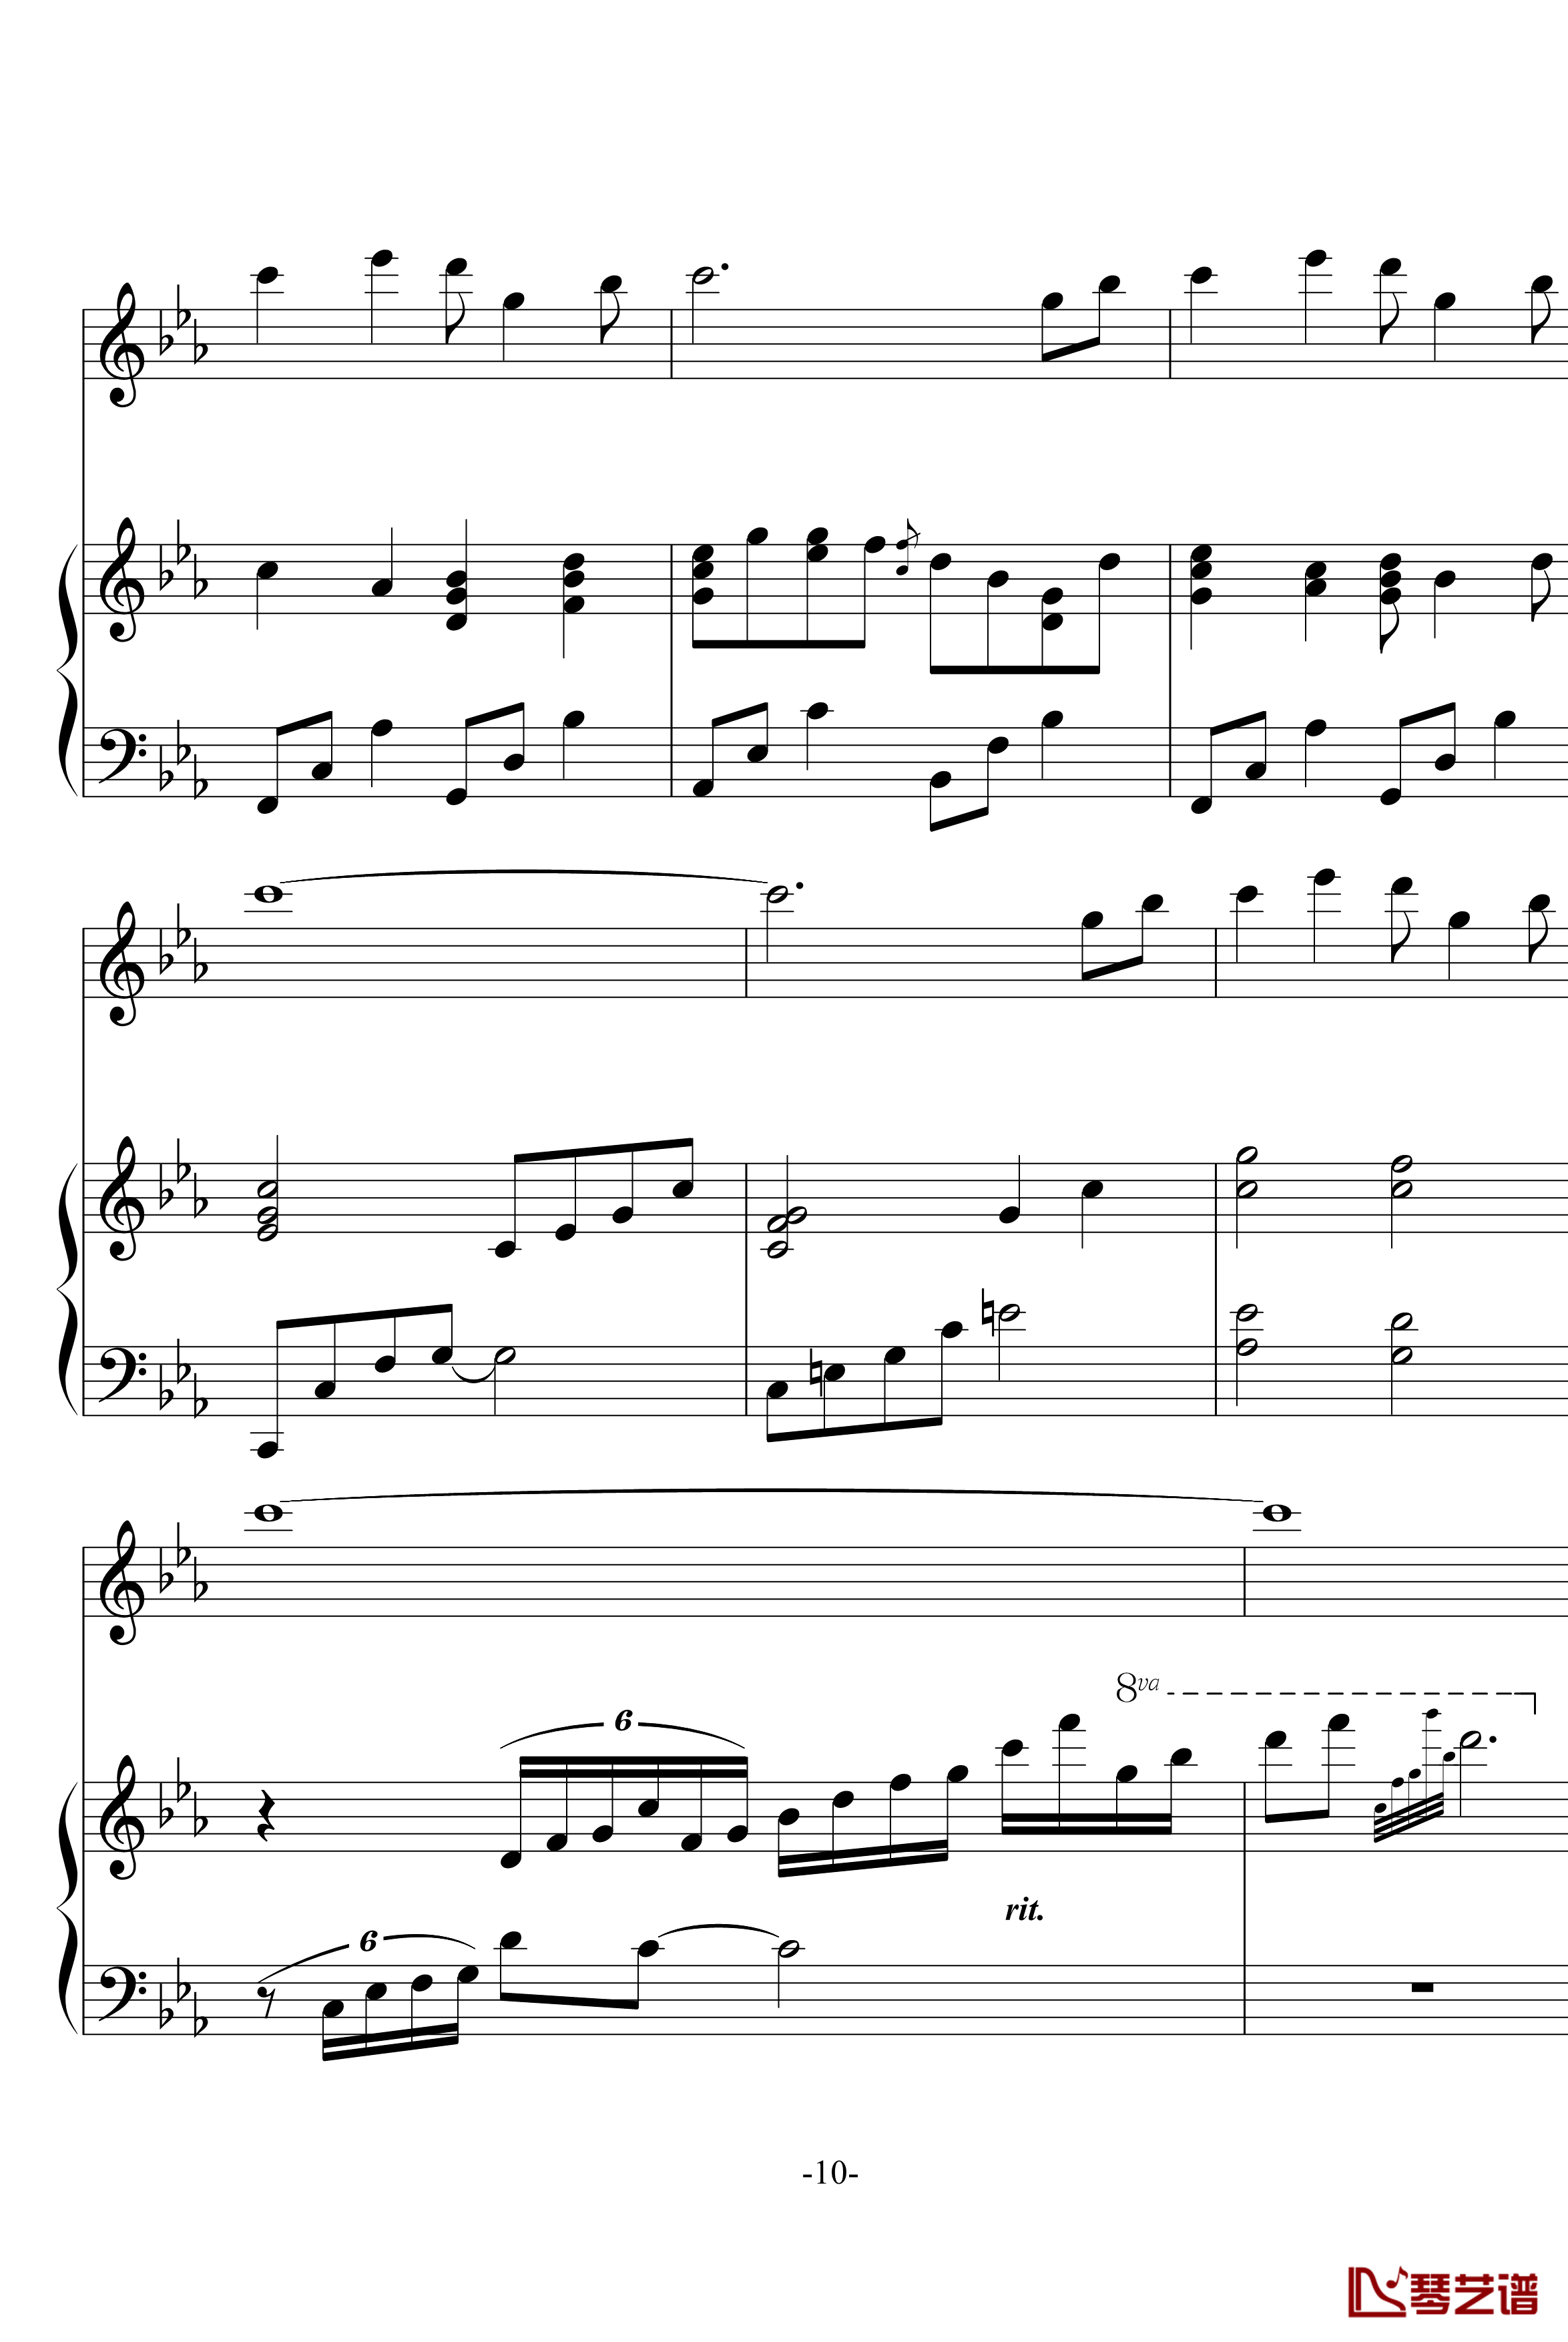 幽灵公主笛子与钢琴钢琴谱-OST-久石让10